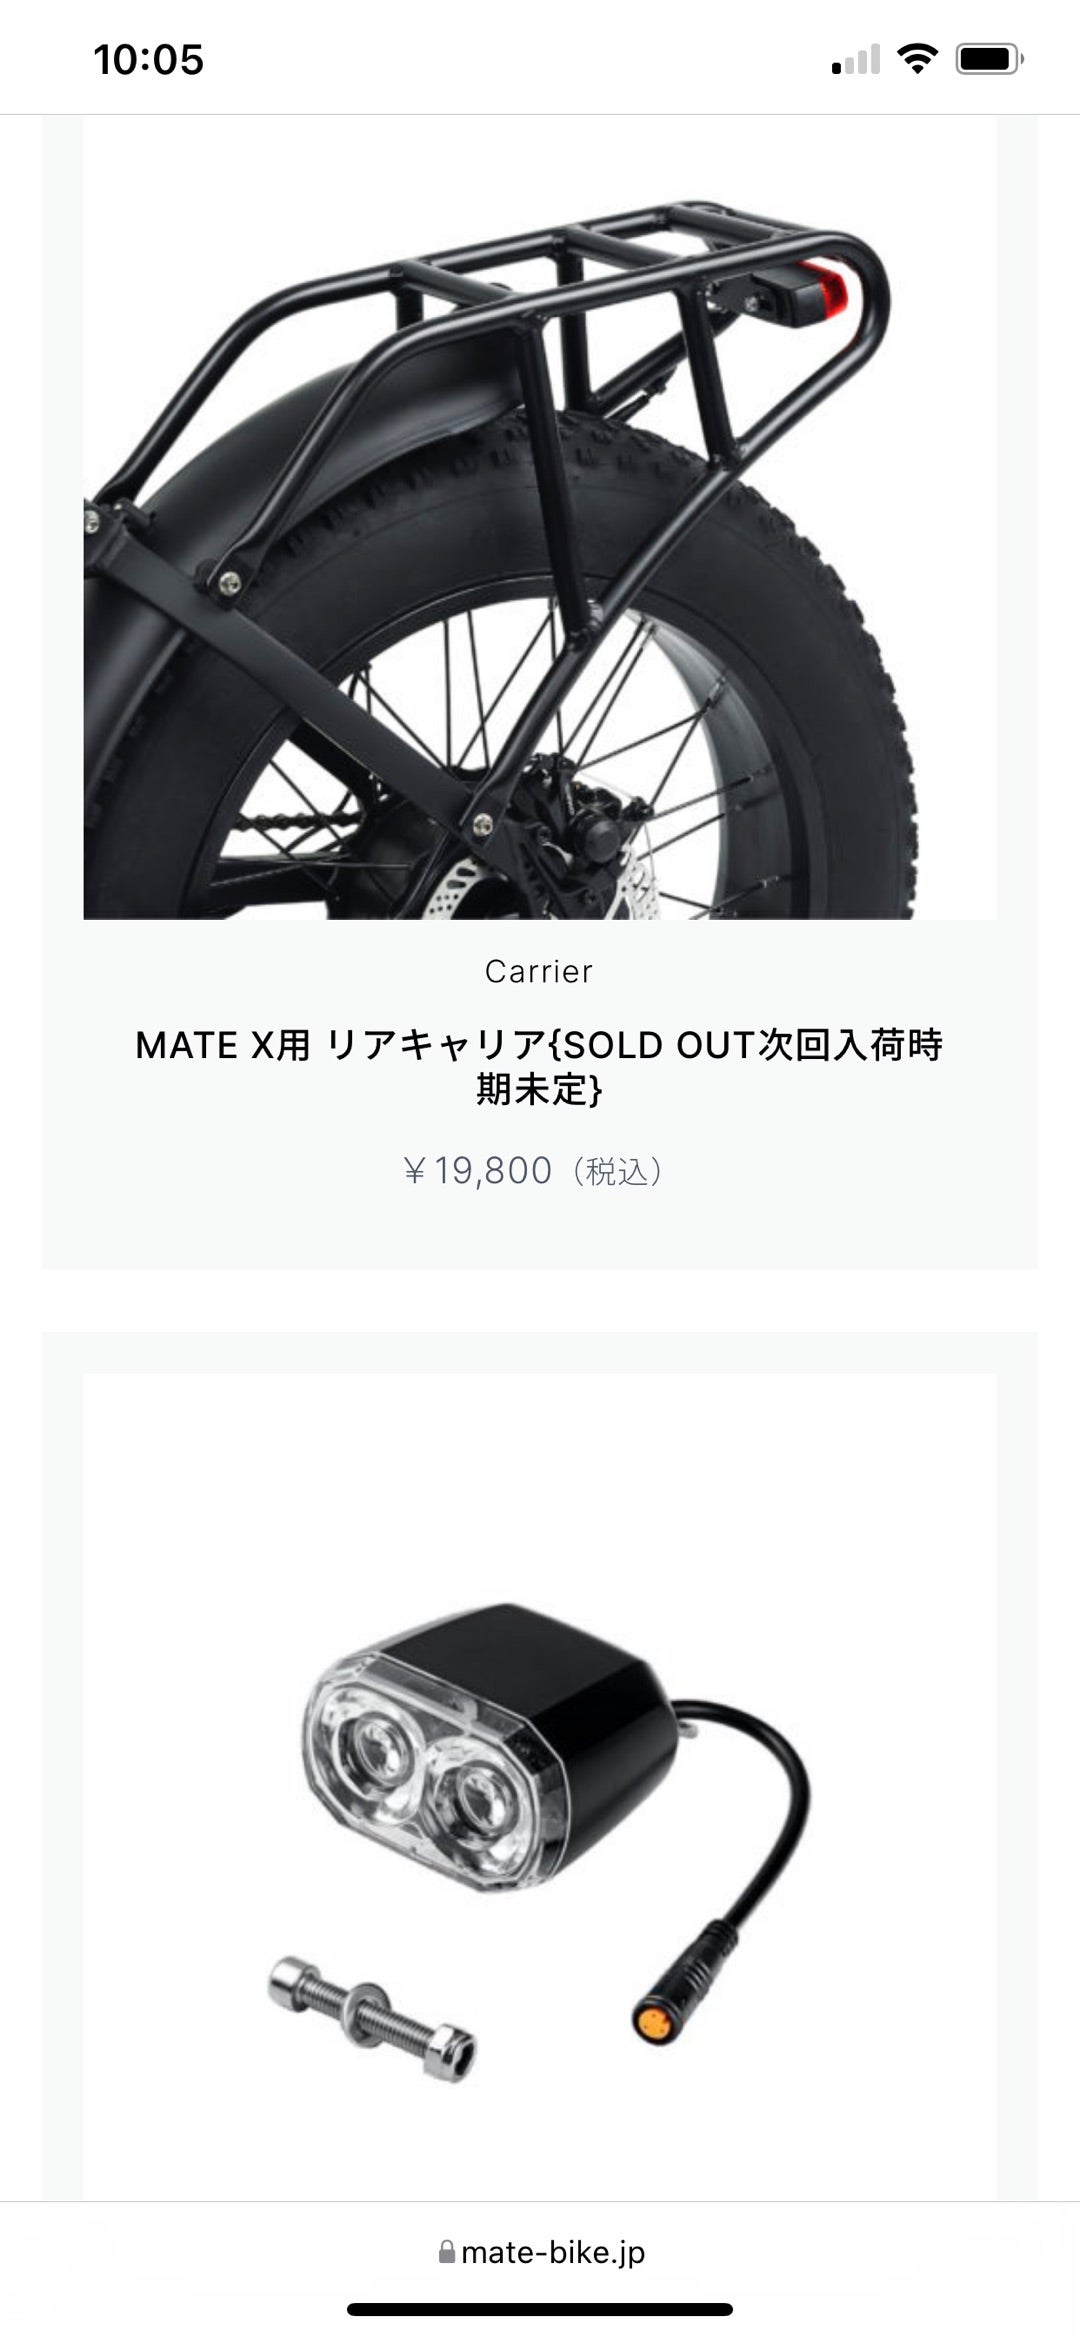 売品 【新品未使用】MATE X 油圧式ブレーキタイプ用 リアキャリア 